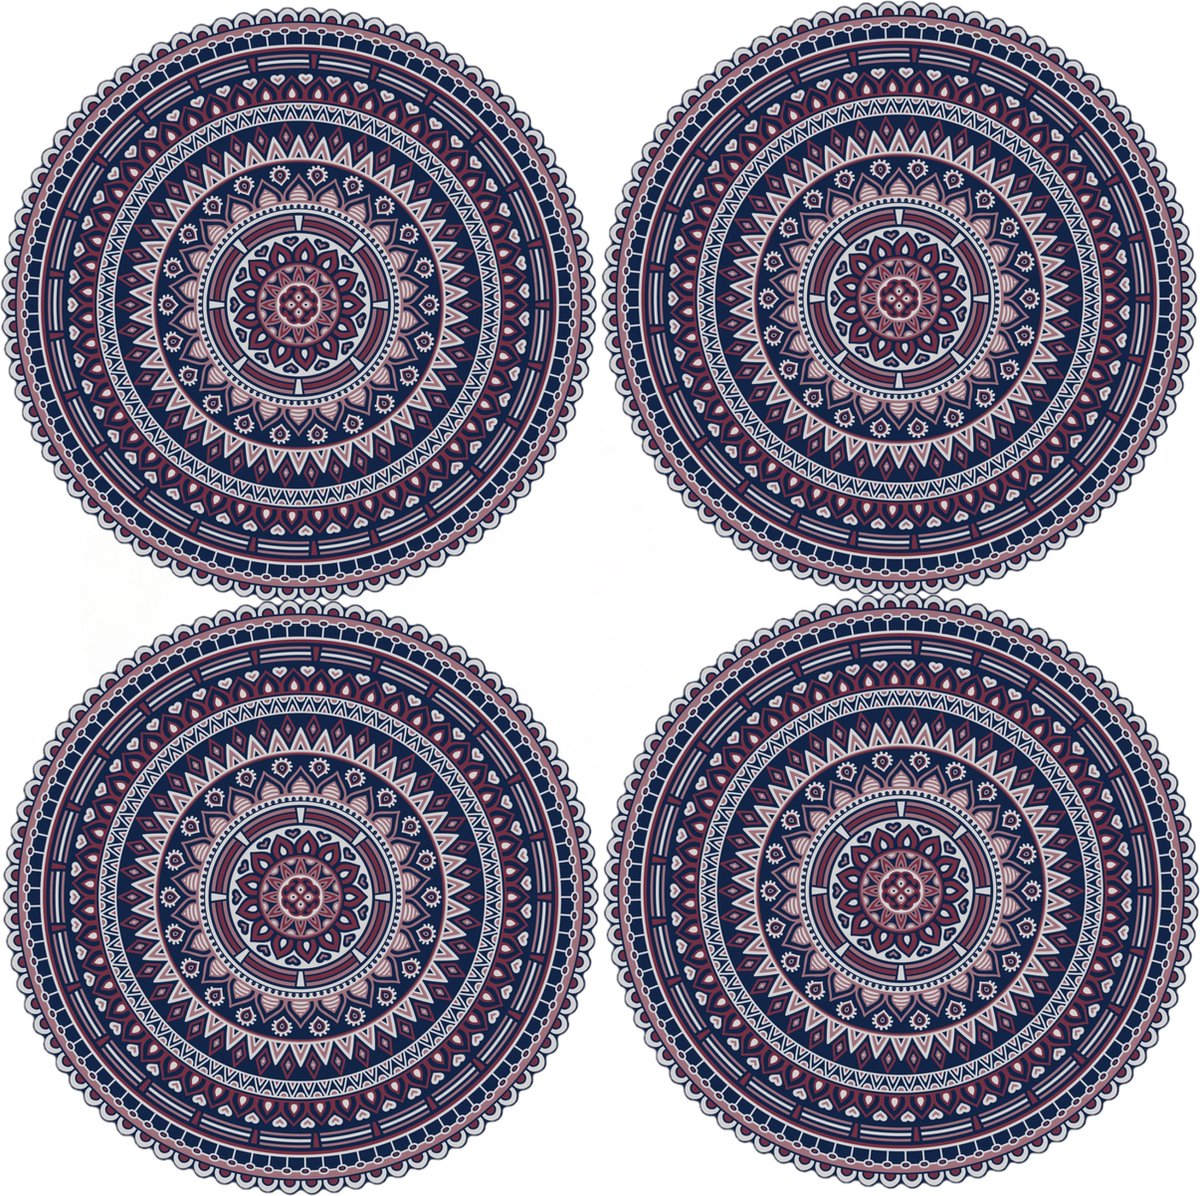 8x stuks Ibiza stijl ronde donkerblauwe placemats van vinyl D38 cm - Antislip/waterafstotend - Stevige top kwaliteit